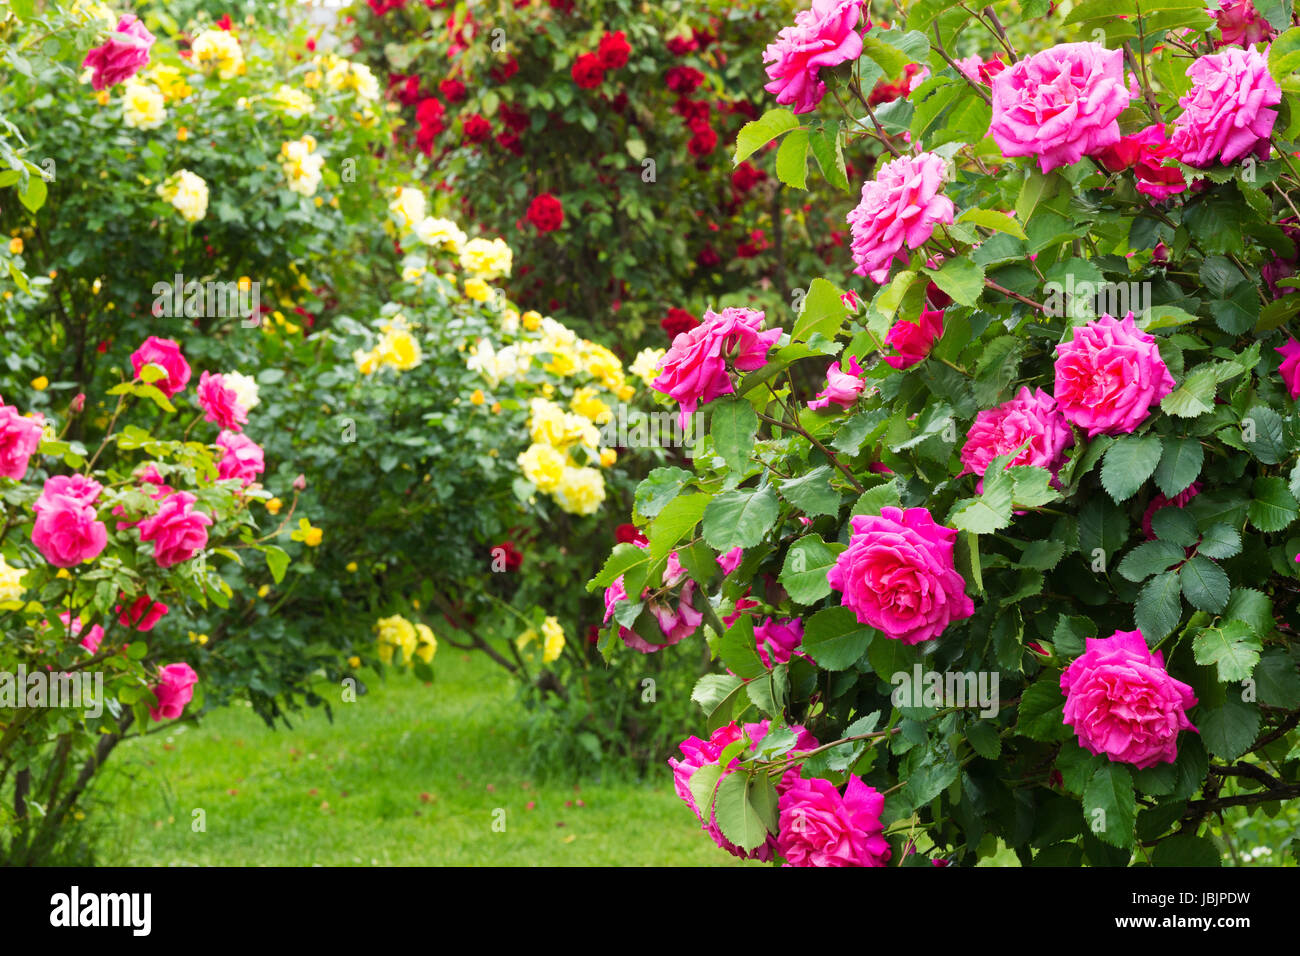 Rosenstrauch, verschiedene Sorten von Rosen im Garten Stock Photo - Alamy